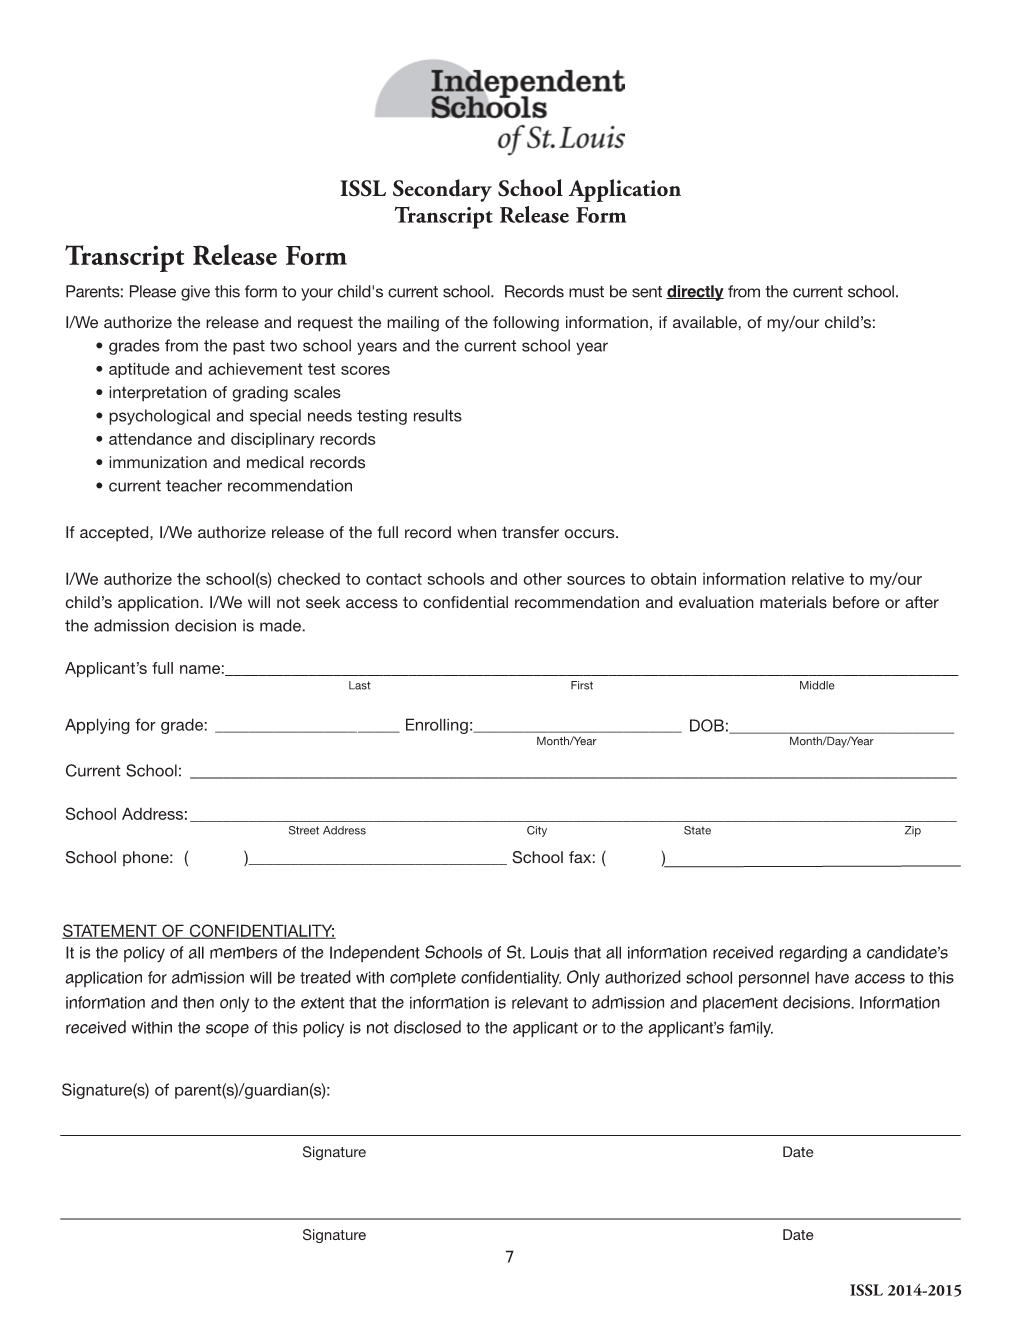 Transcript Release Form Transcript Release Form Parents: Please Give This Form to Your Child's Current School